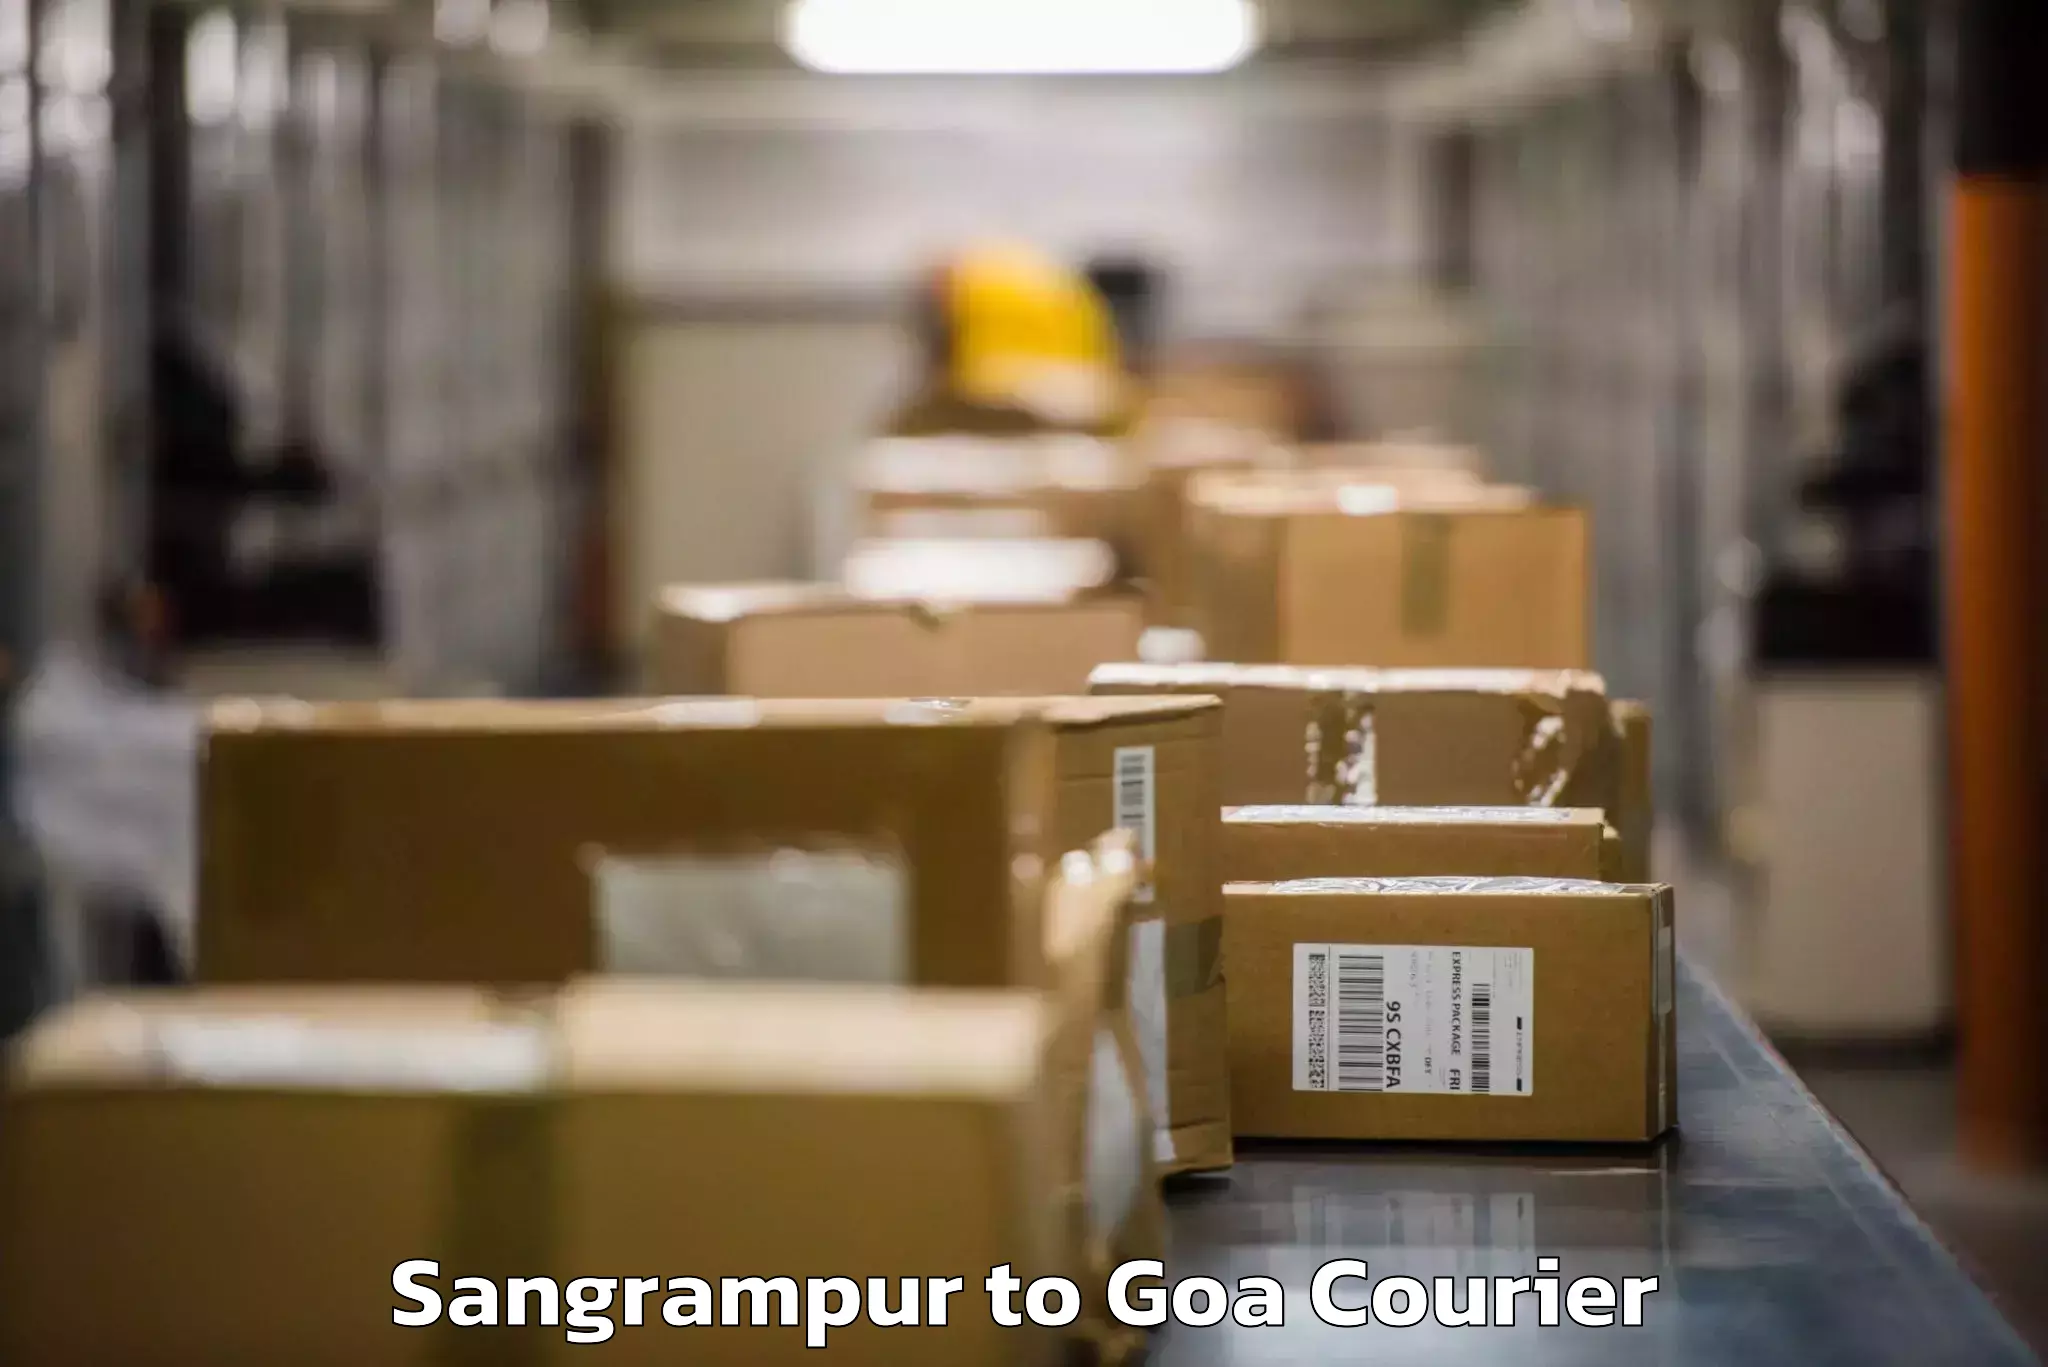 Baggage shipping schedule Sangrampur to NIT Goa